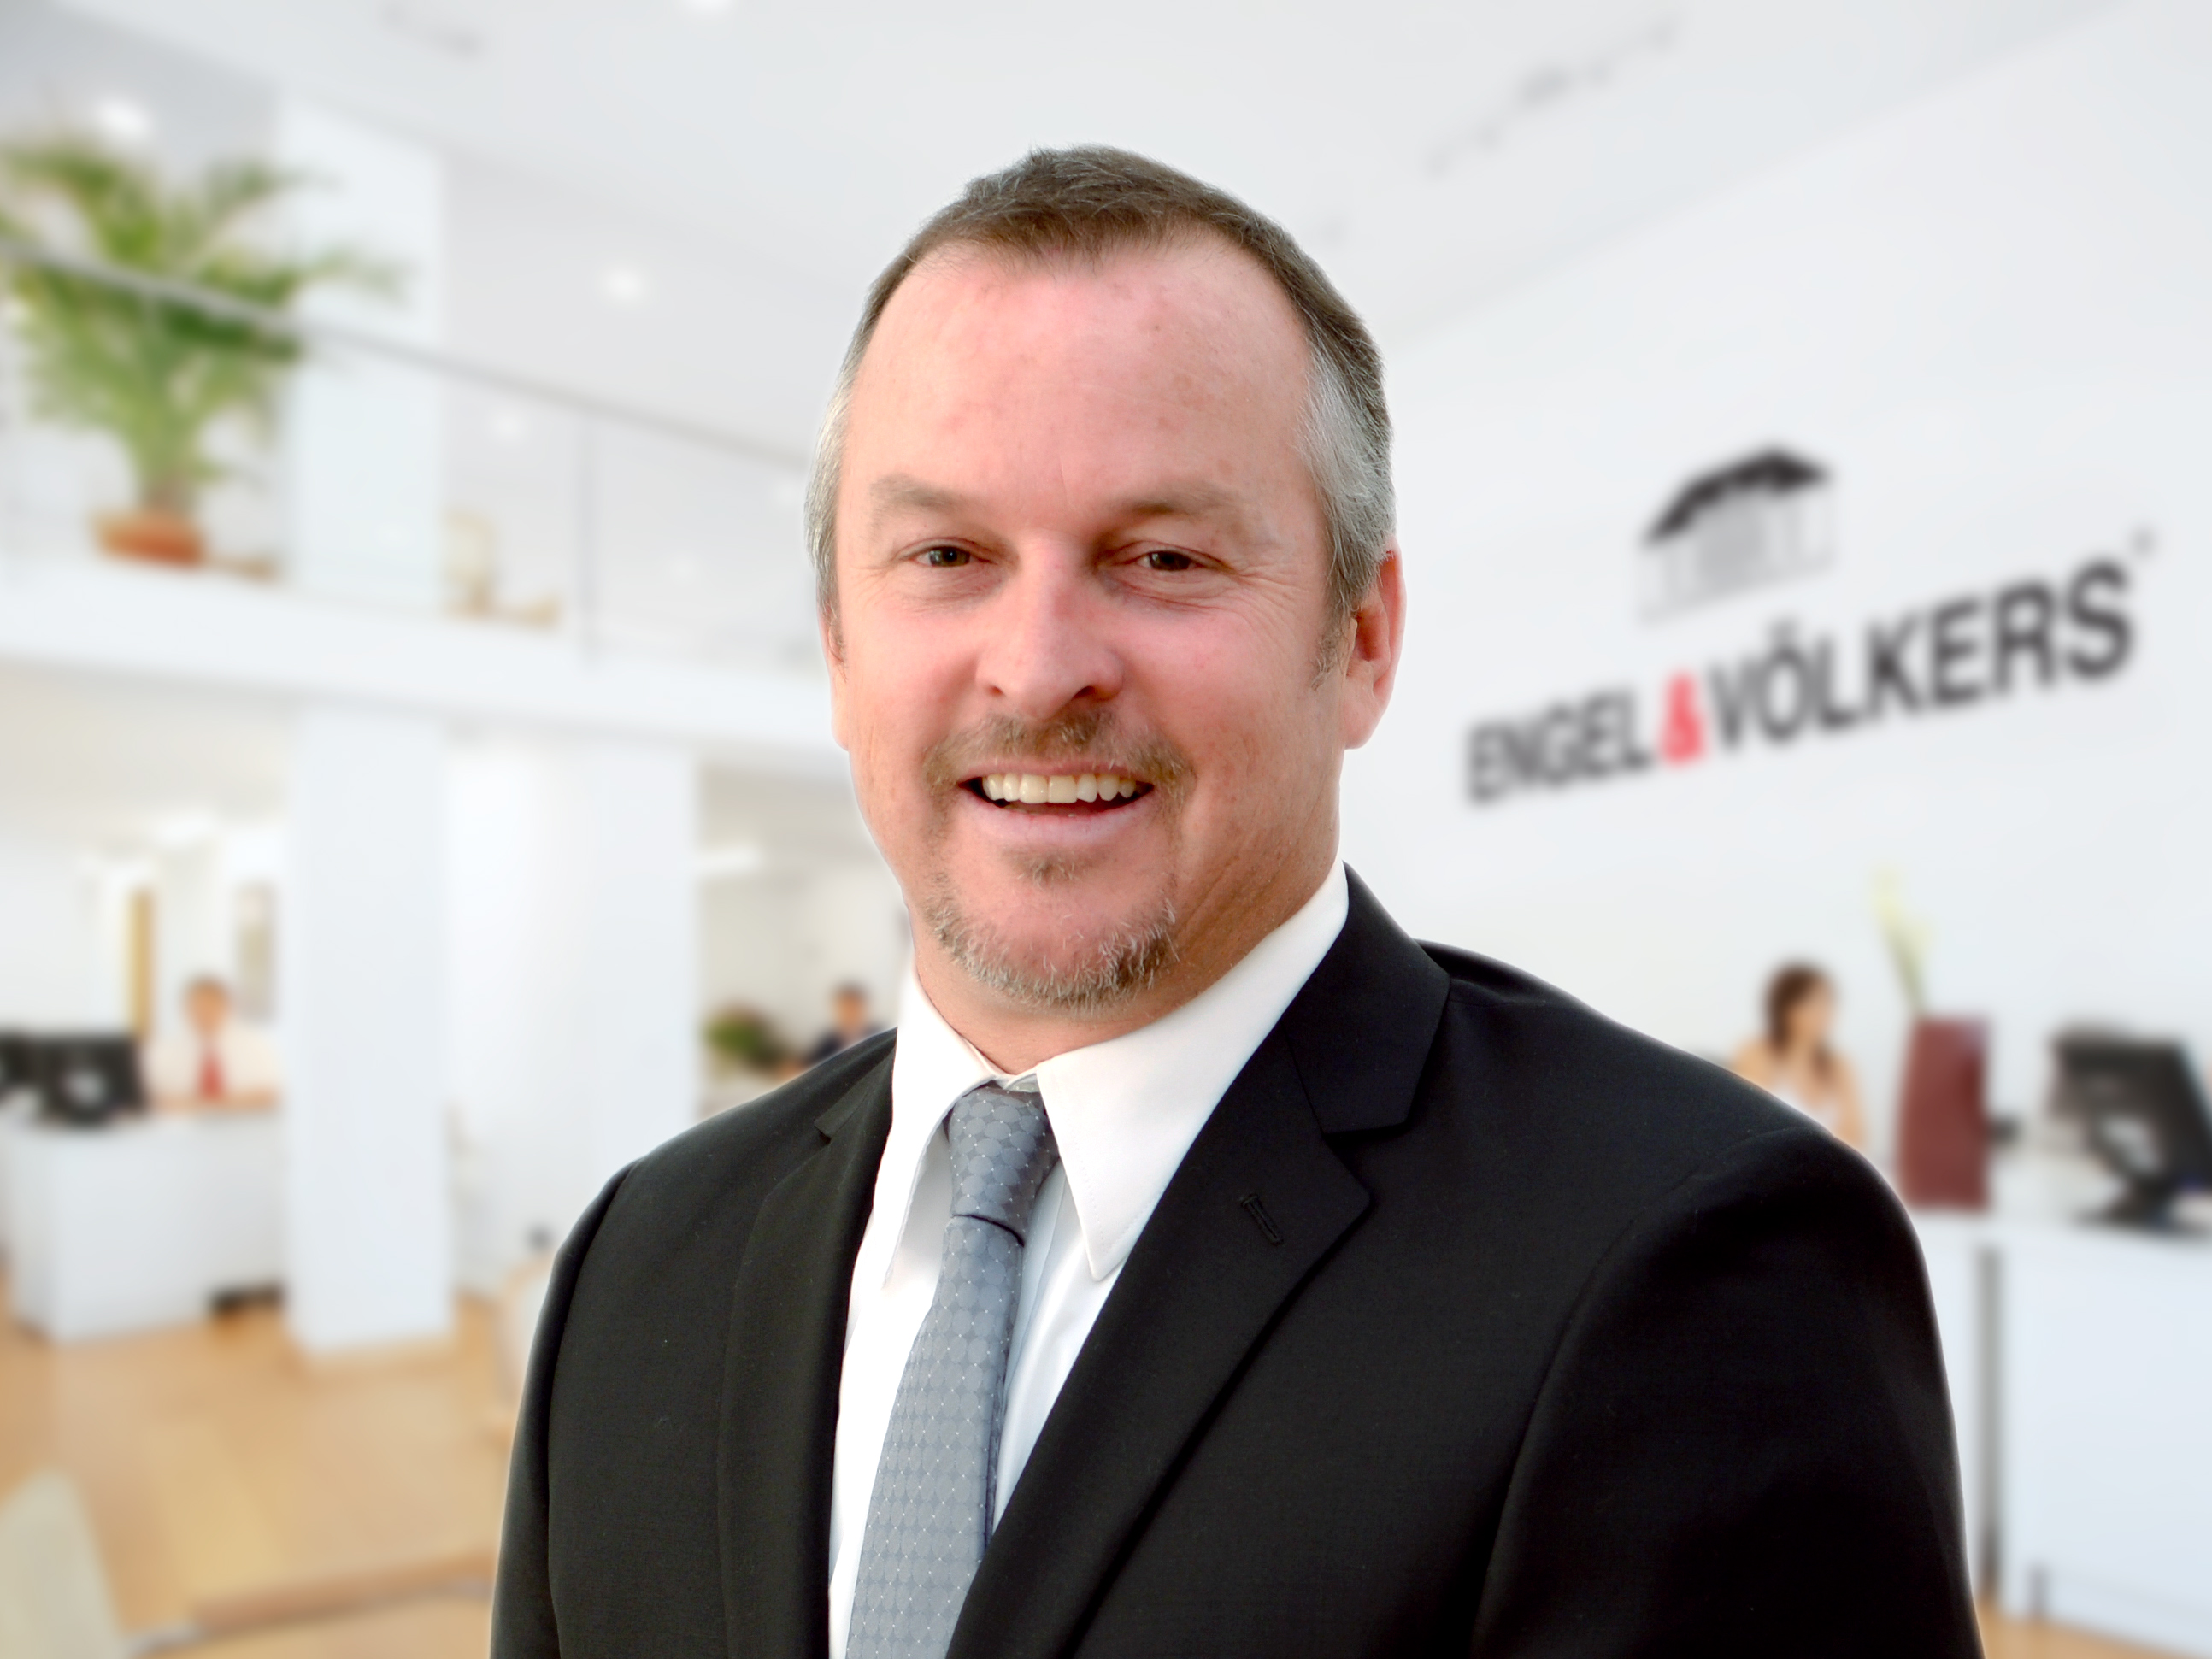 Steve Kepler, License Partner of Engel & Völkers Belleair